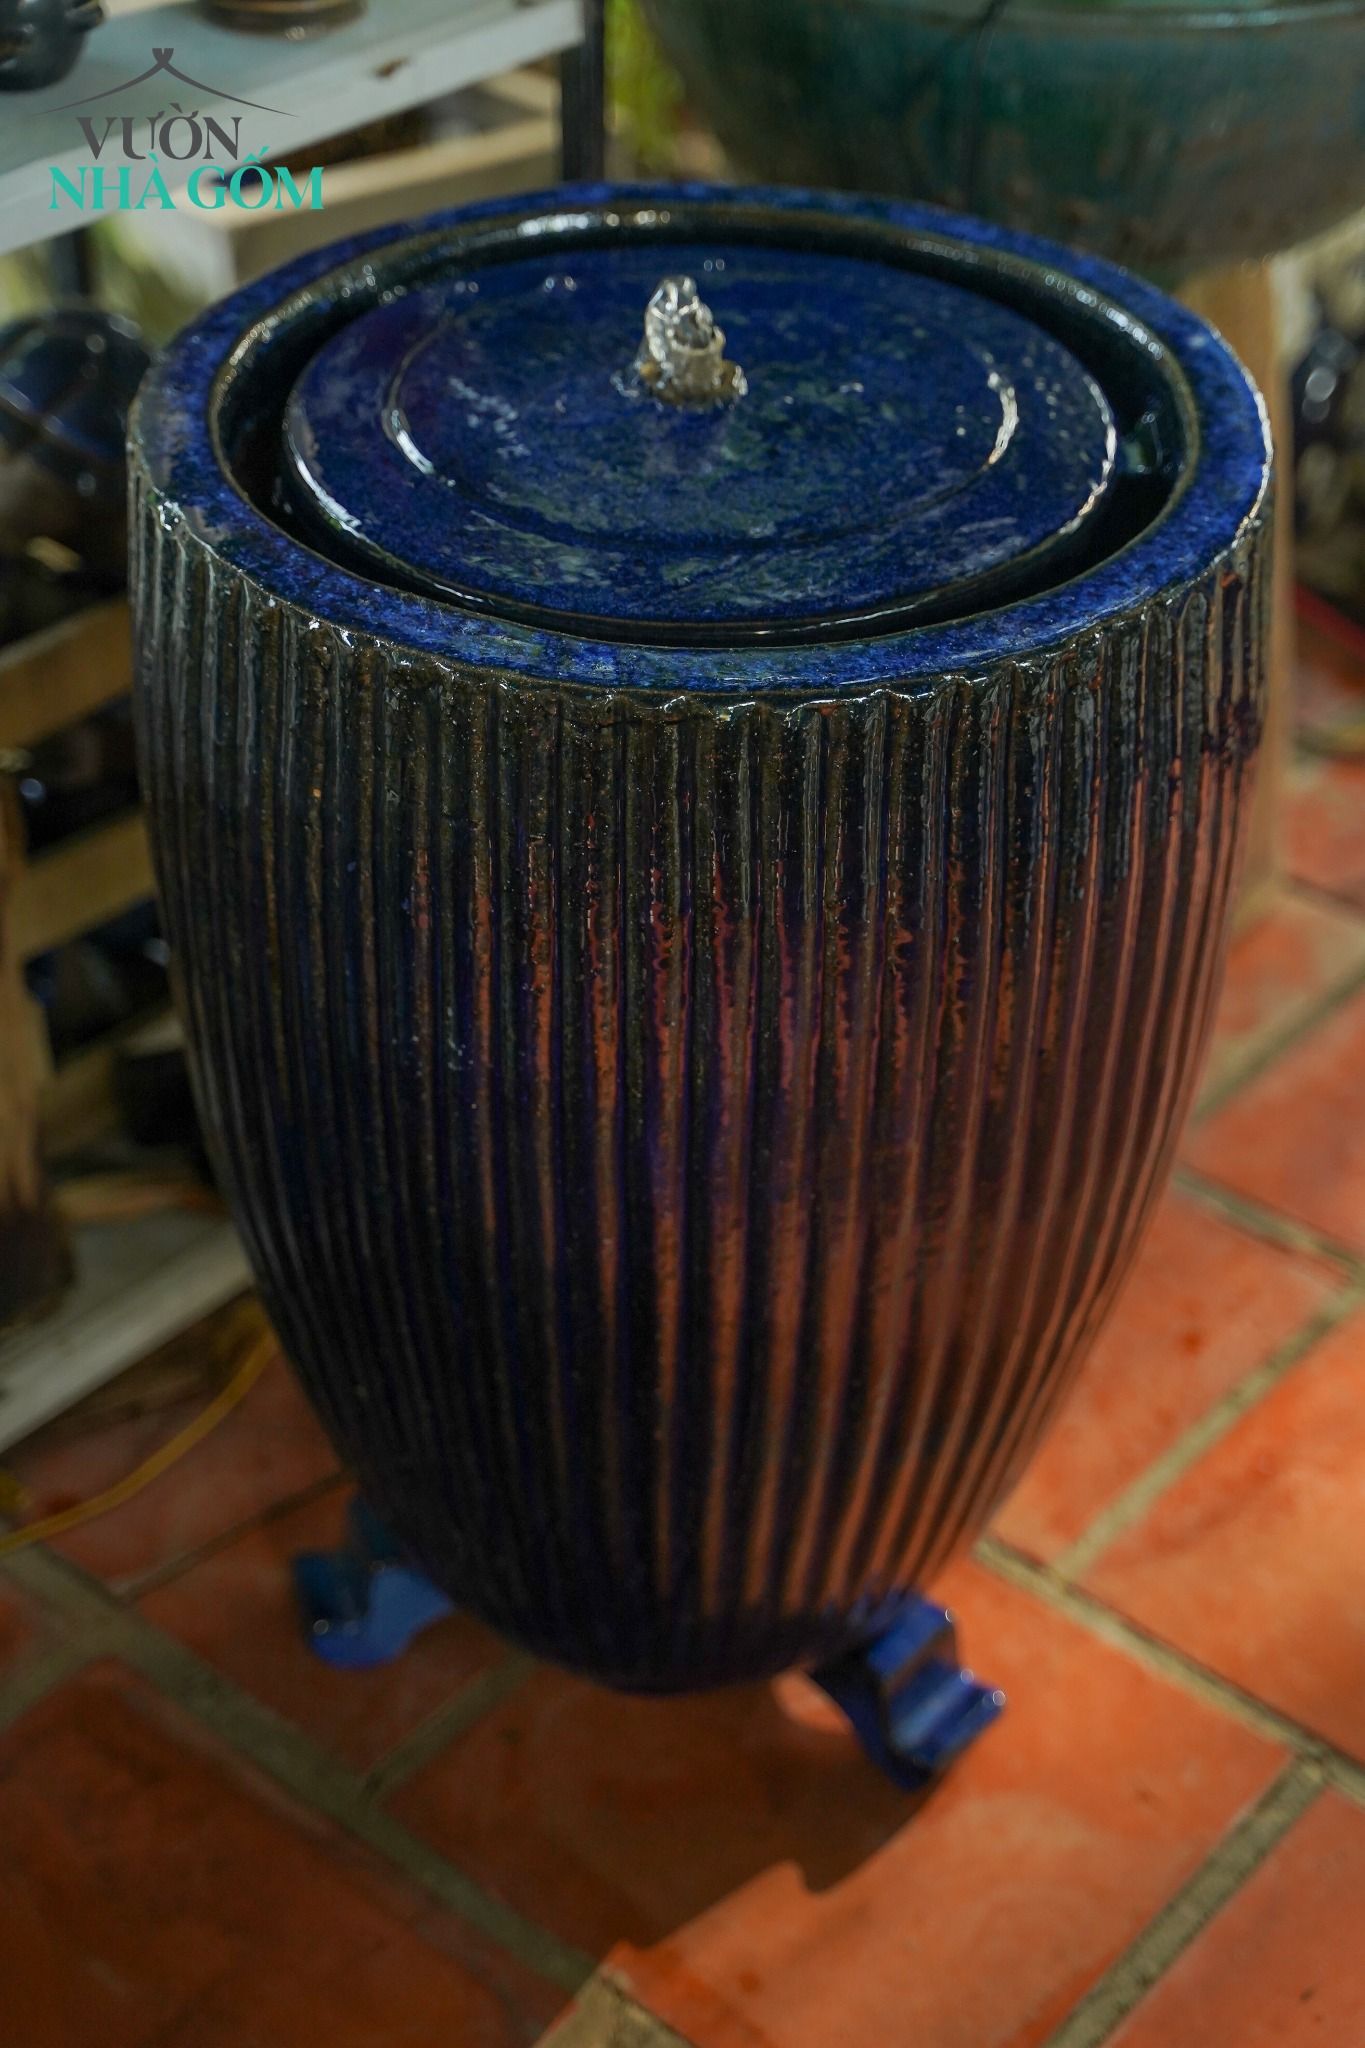  Chóe nước tròn, xanh cobalt, sản phẩm quy chuẩn xuất khẩu, H60 cm 